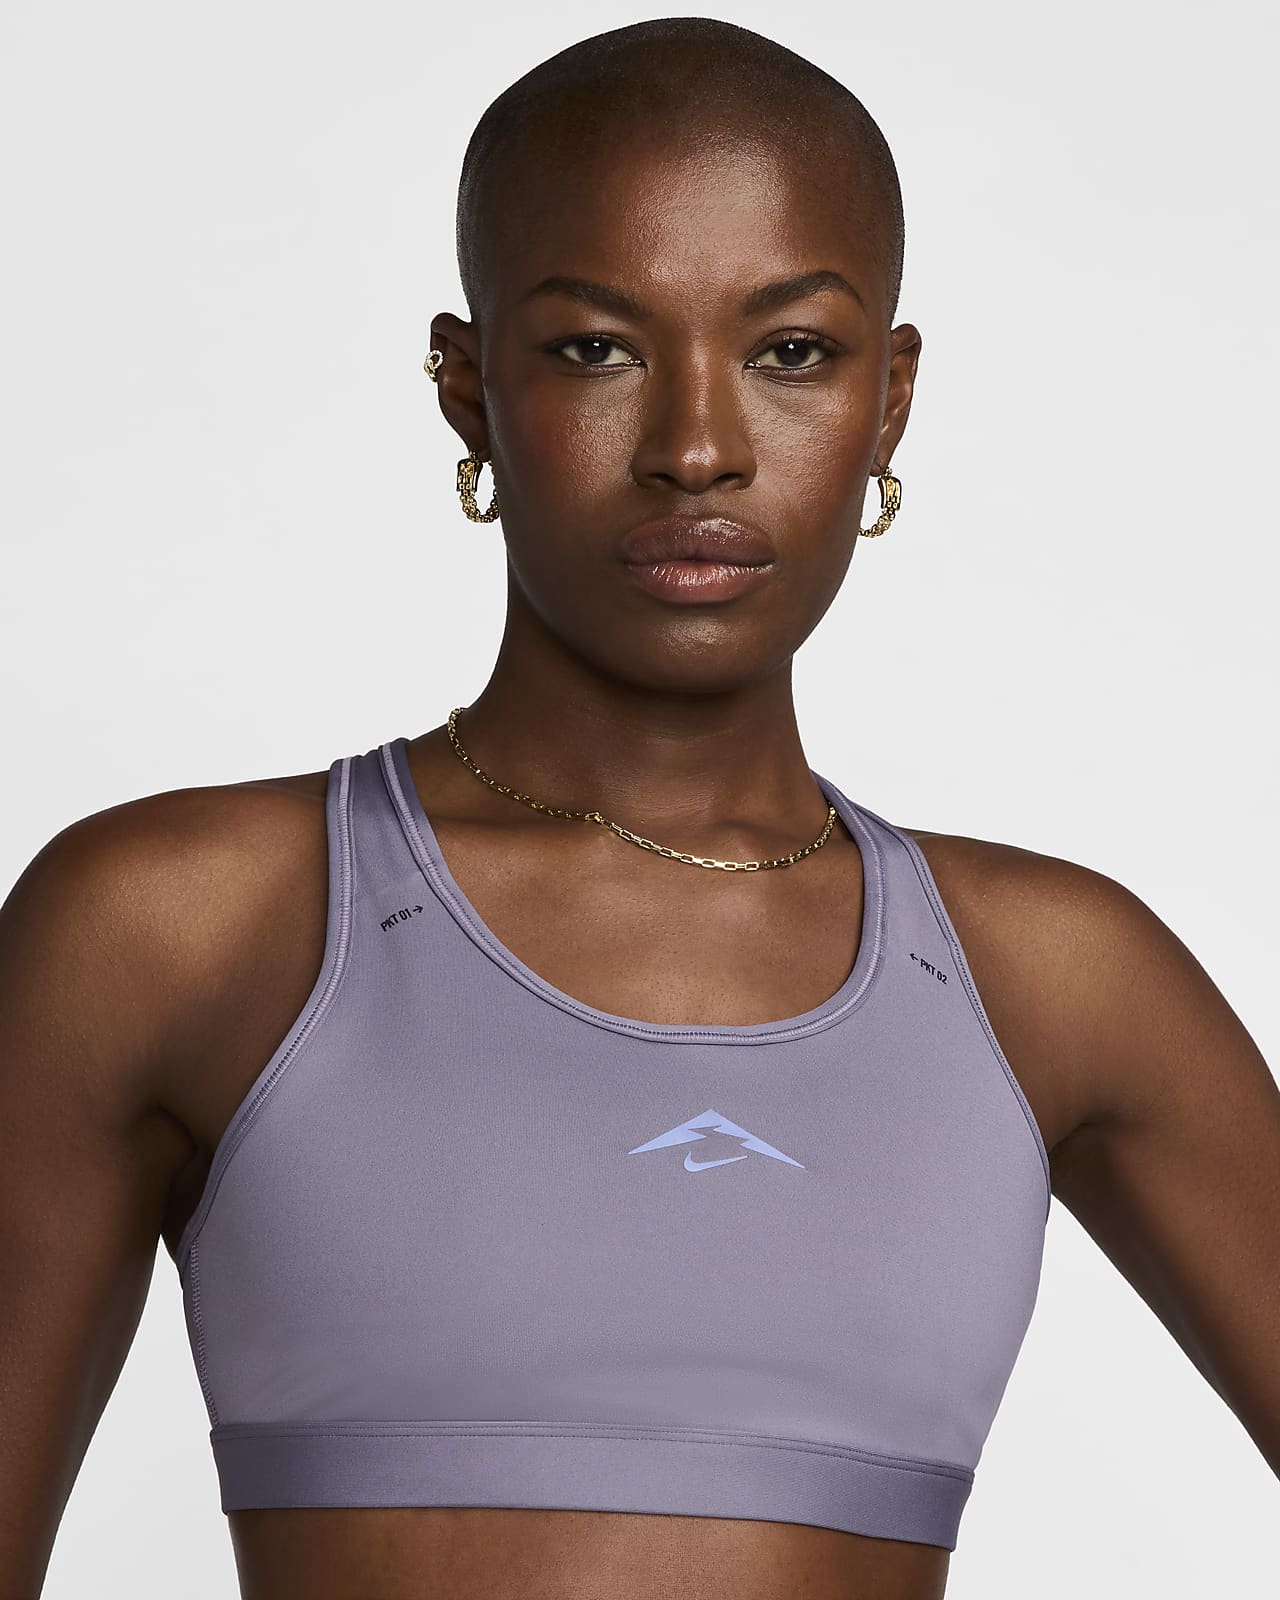 Dámská sportovní podprsenka Nike Trail Swoosh On The Run se střední oporou a lehkou podšívkou